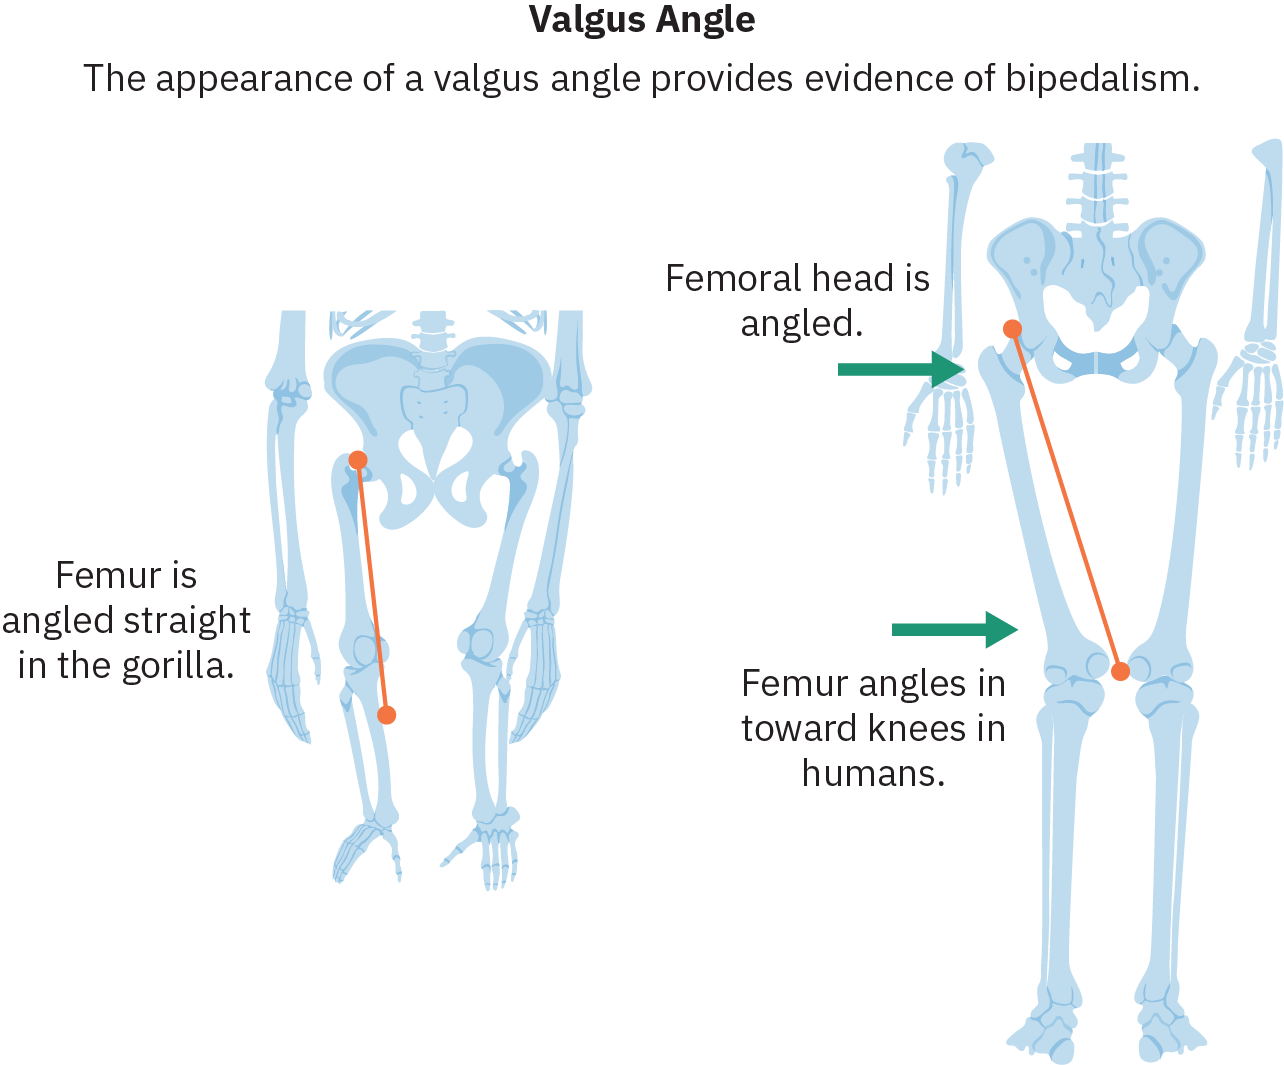 Esboços dos quadris e pernas de duas espécies diferentes. À esquerda está um esqueleto com braços longos e pernas curtas que se estendem diretamente dos quadris. Uma linha traça o fêmur (osso da parte superior da perna) e o texto relacionado diz “O fêmur está inclinado diretamente no gorila”. À direita está um esqueleto humano. Os fêmures desse esqueleto se inclinam para dentro, com os joelhos mais próximos do que as órbitas do quadril. O texto apontando para o quadril diz “A cabeça femoral está inclinada”. O texto apontando para o fêmur diz “Ângulos do fêmur em direção aos joelhos em humanos”.